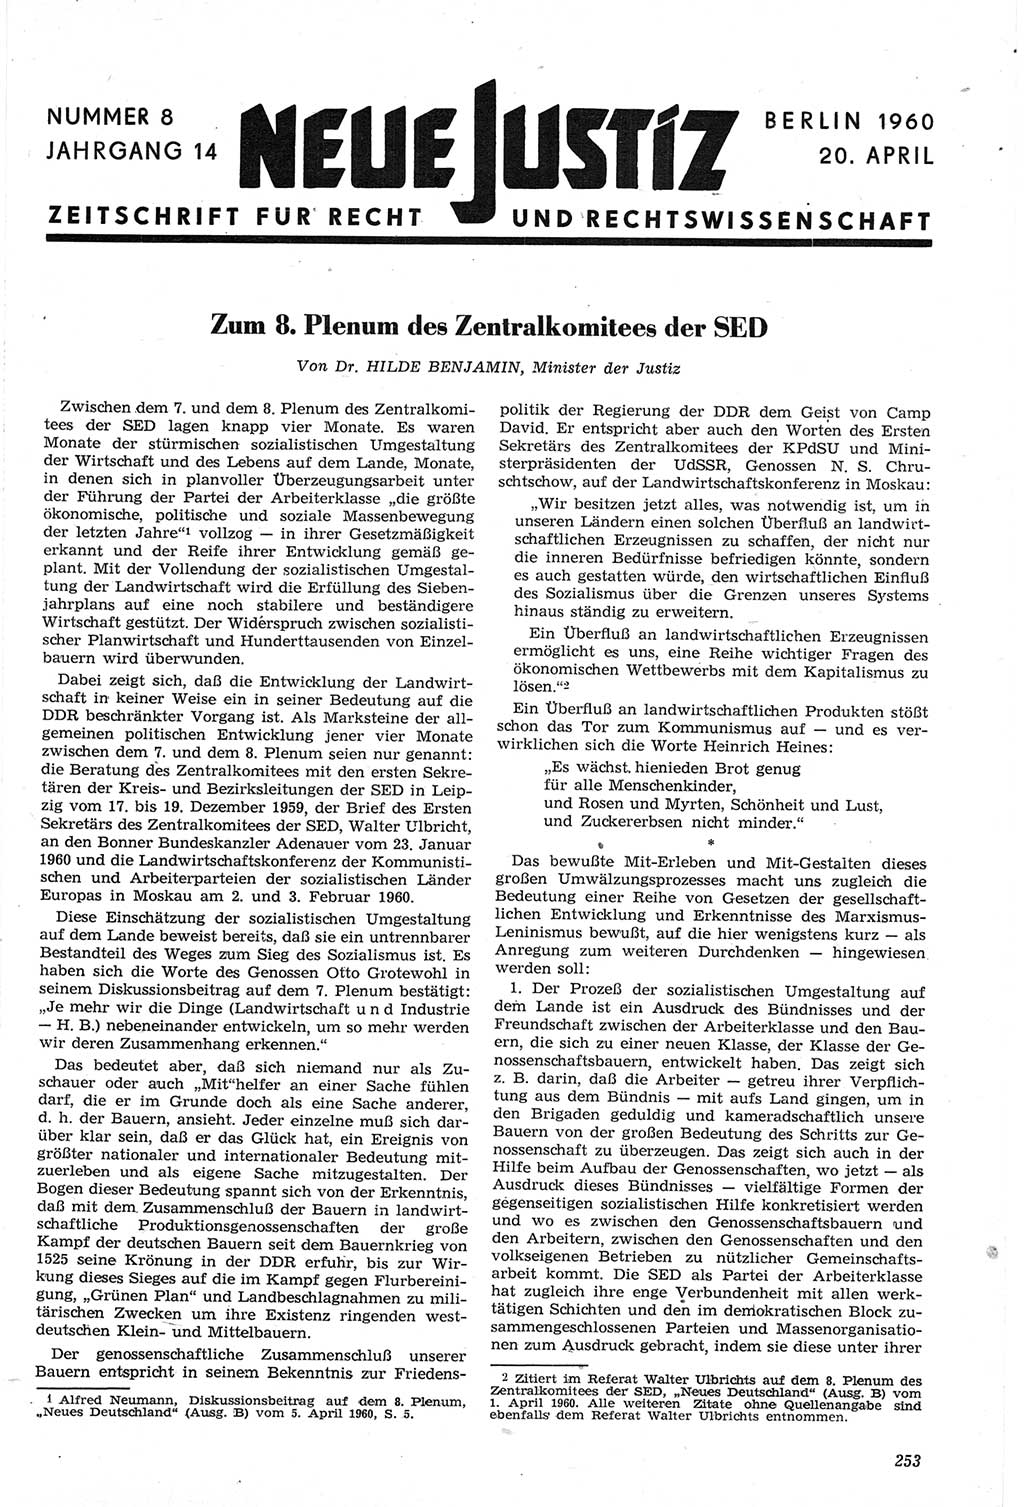 Neue Justiz (NJ), Zeitschrift für Recht und Rechtswissenschaft [Deutsche Demokratische Republik (DDR)], 14. Jahrgang 1960, Seite 253 (NJ DDR 1960, S. 253)